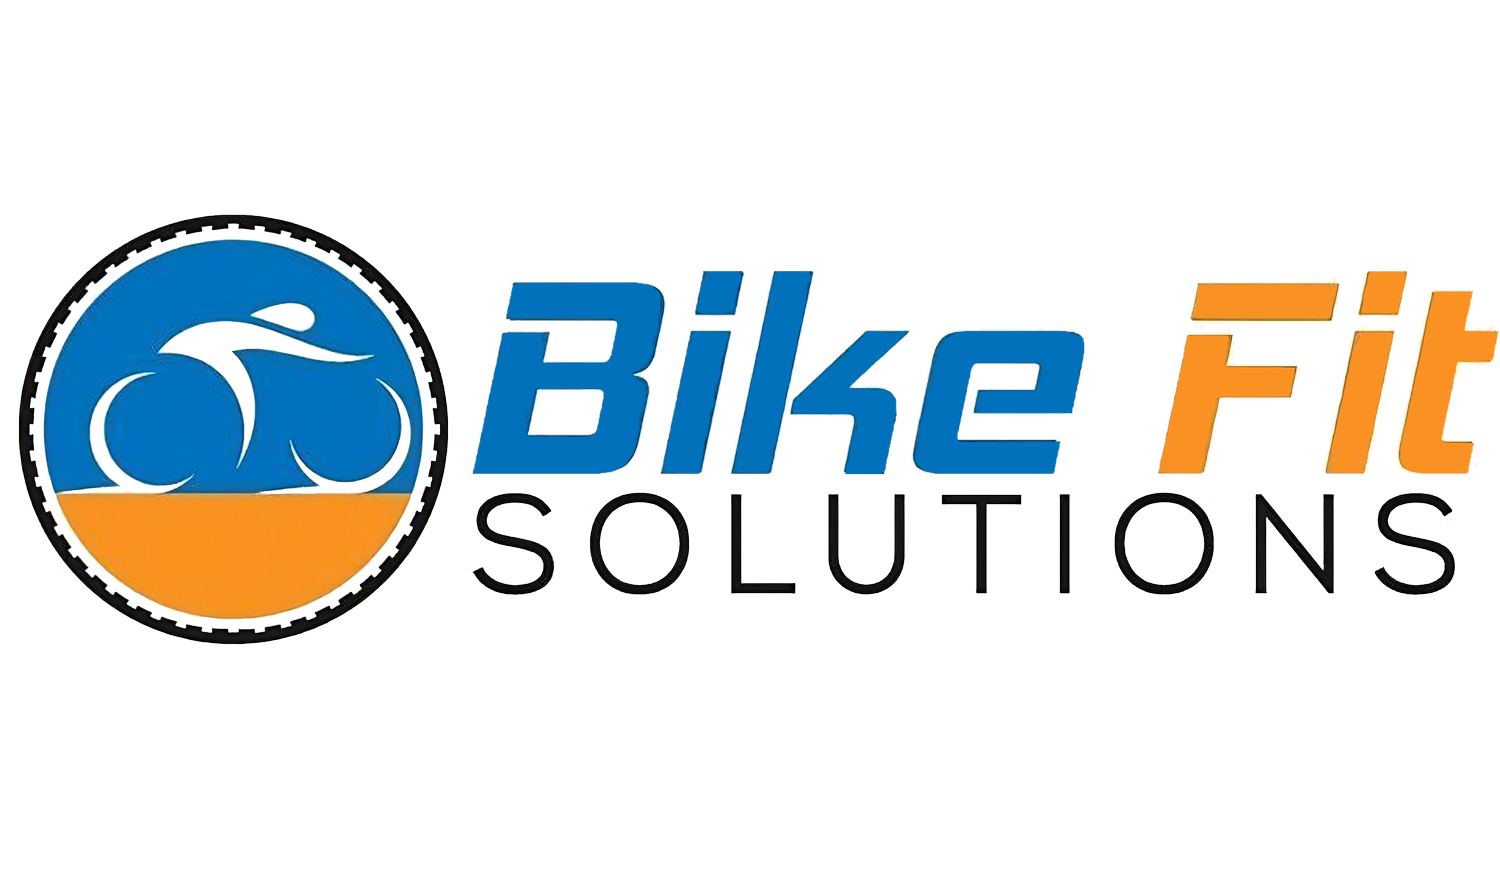 BikeFit Solutions